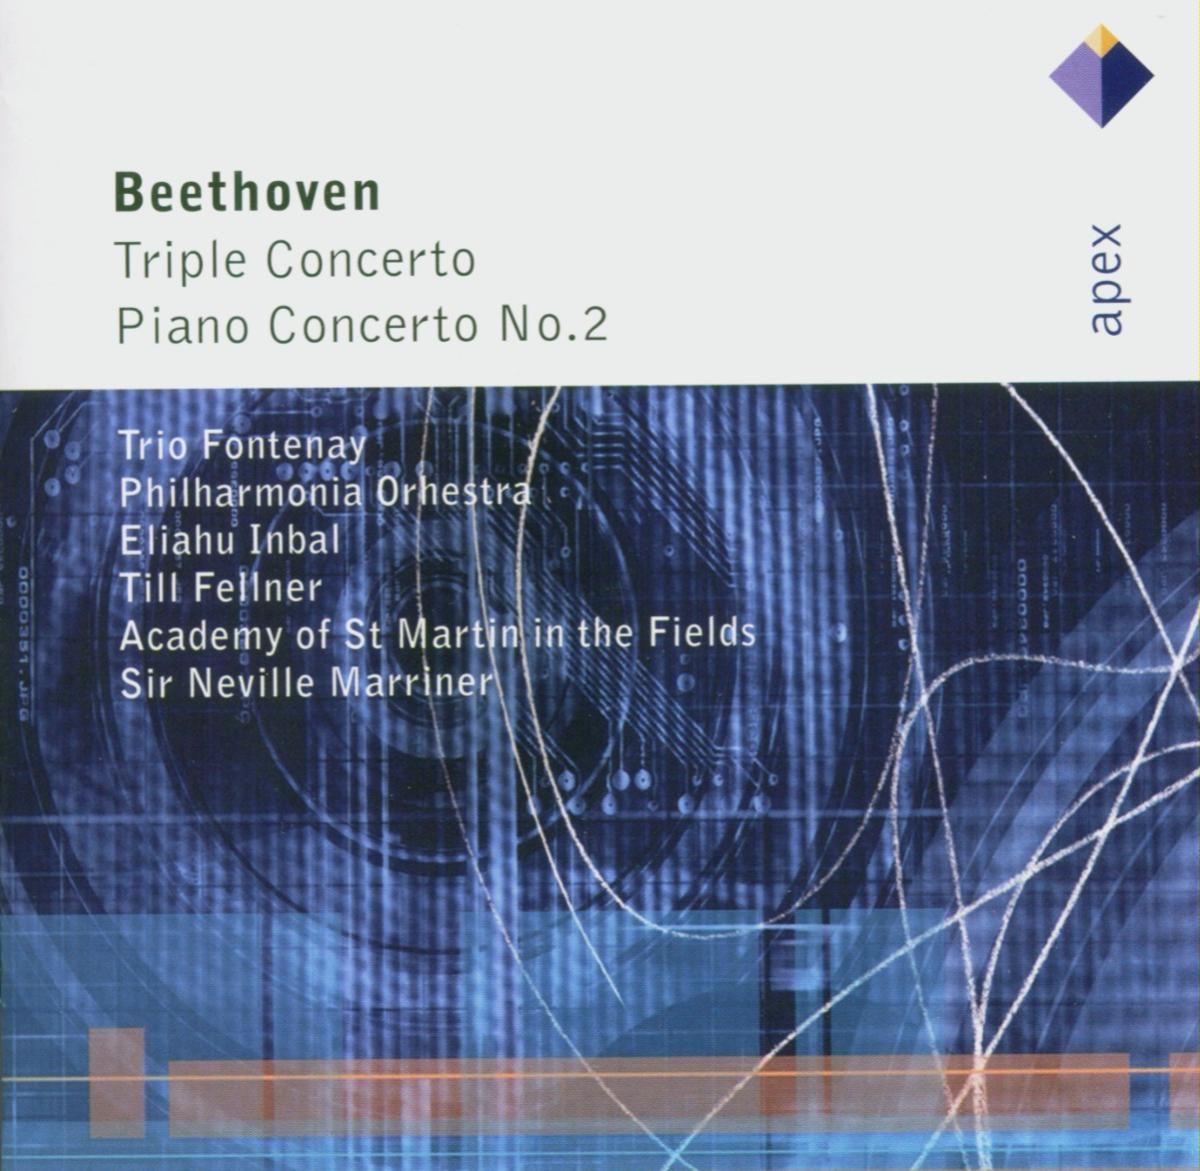 Beethoven : Triple Concerto & Piano Concerto No.2 - Apex